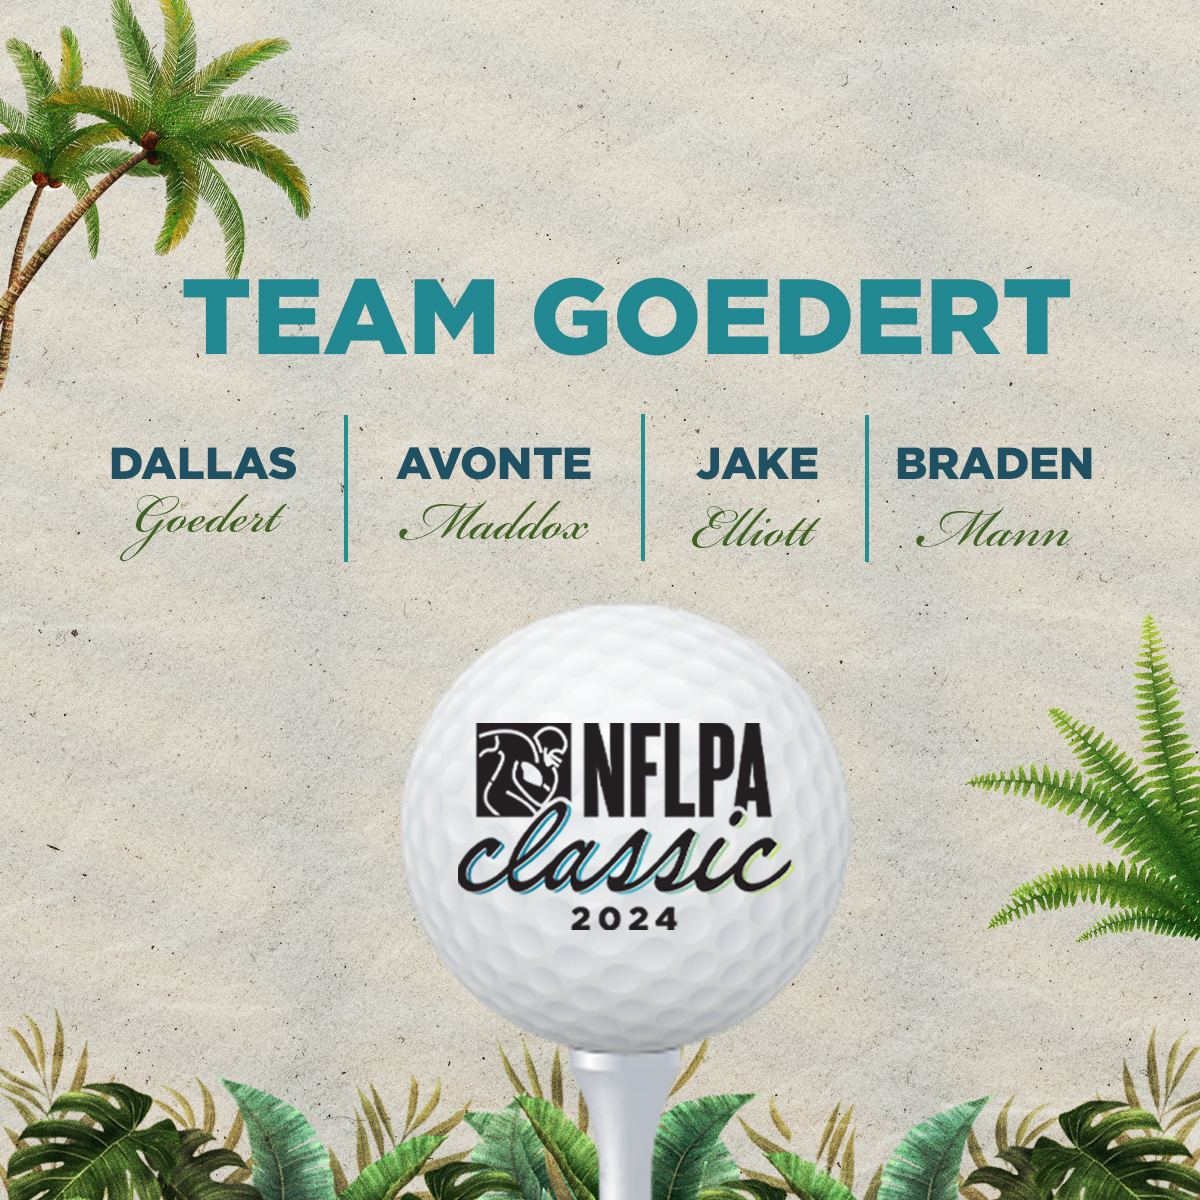 Team Goedert’s hoping to soar above the competition 🦅 TEAM GOEDERT 🏌️ @goedert33 🏌️ @2live_AM 🏌️ @jake_elliott22 🏌️ @MannBraden